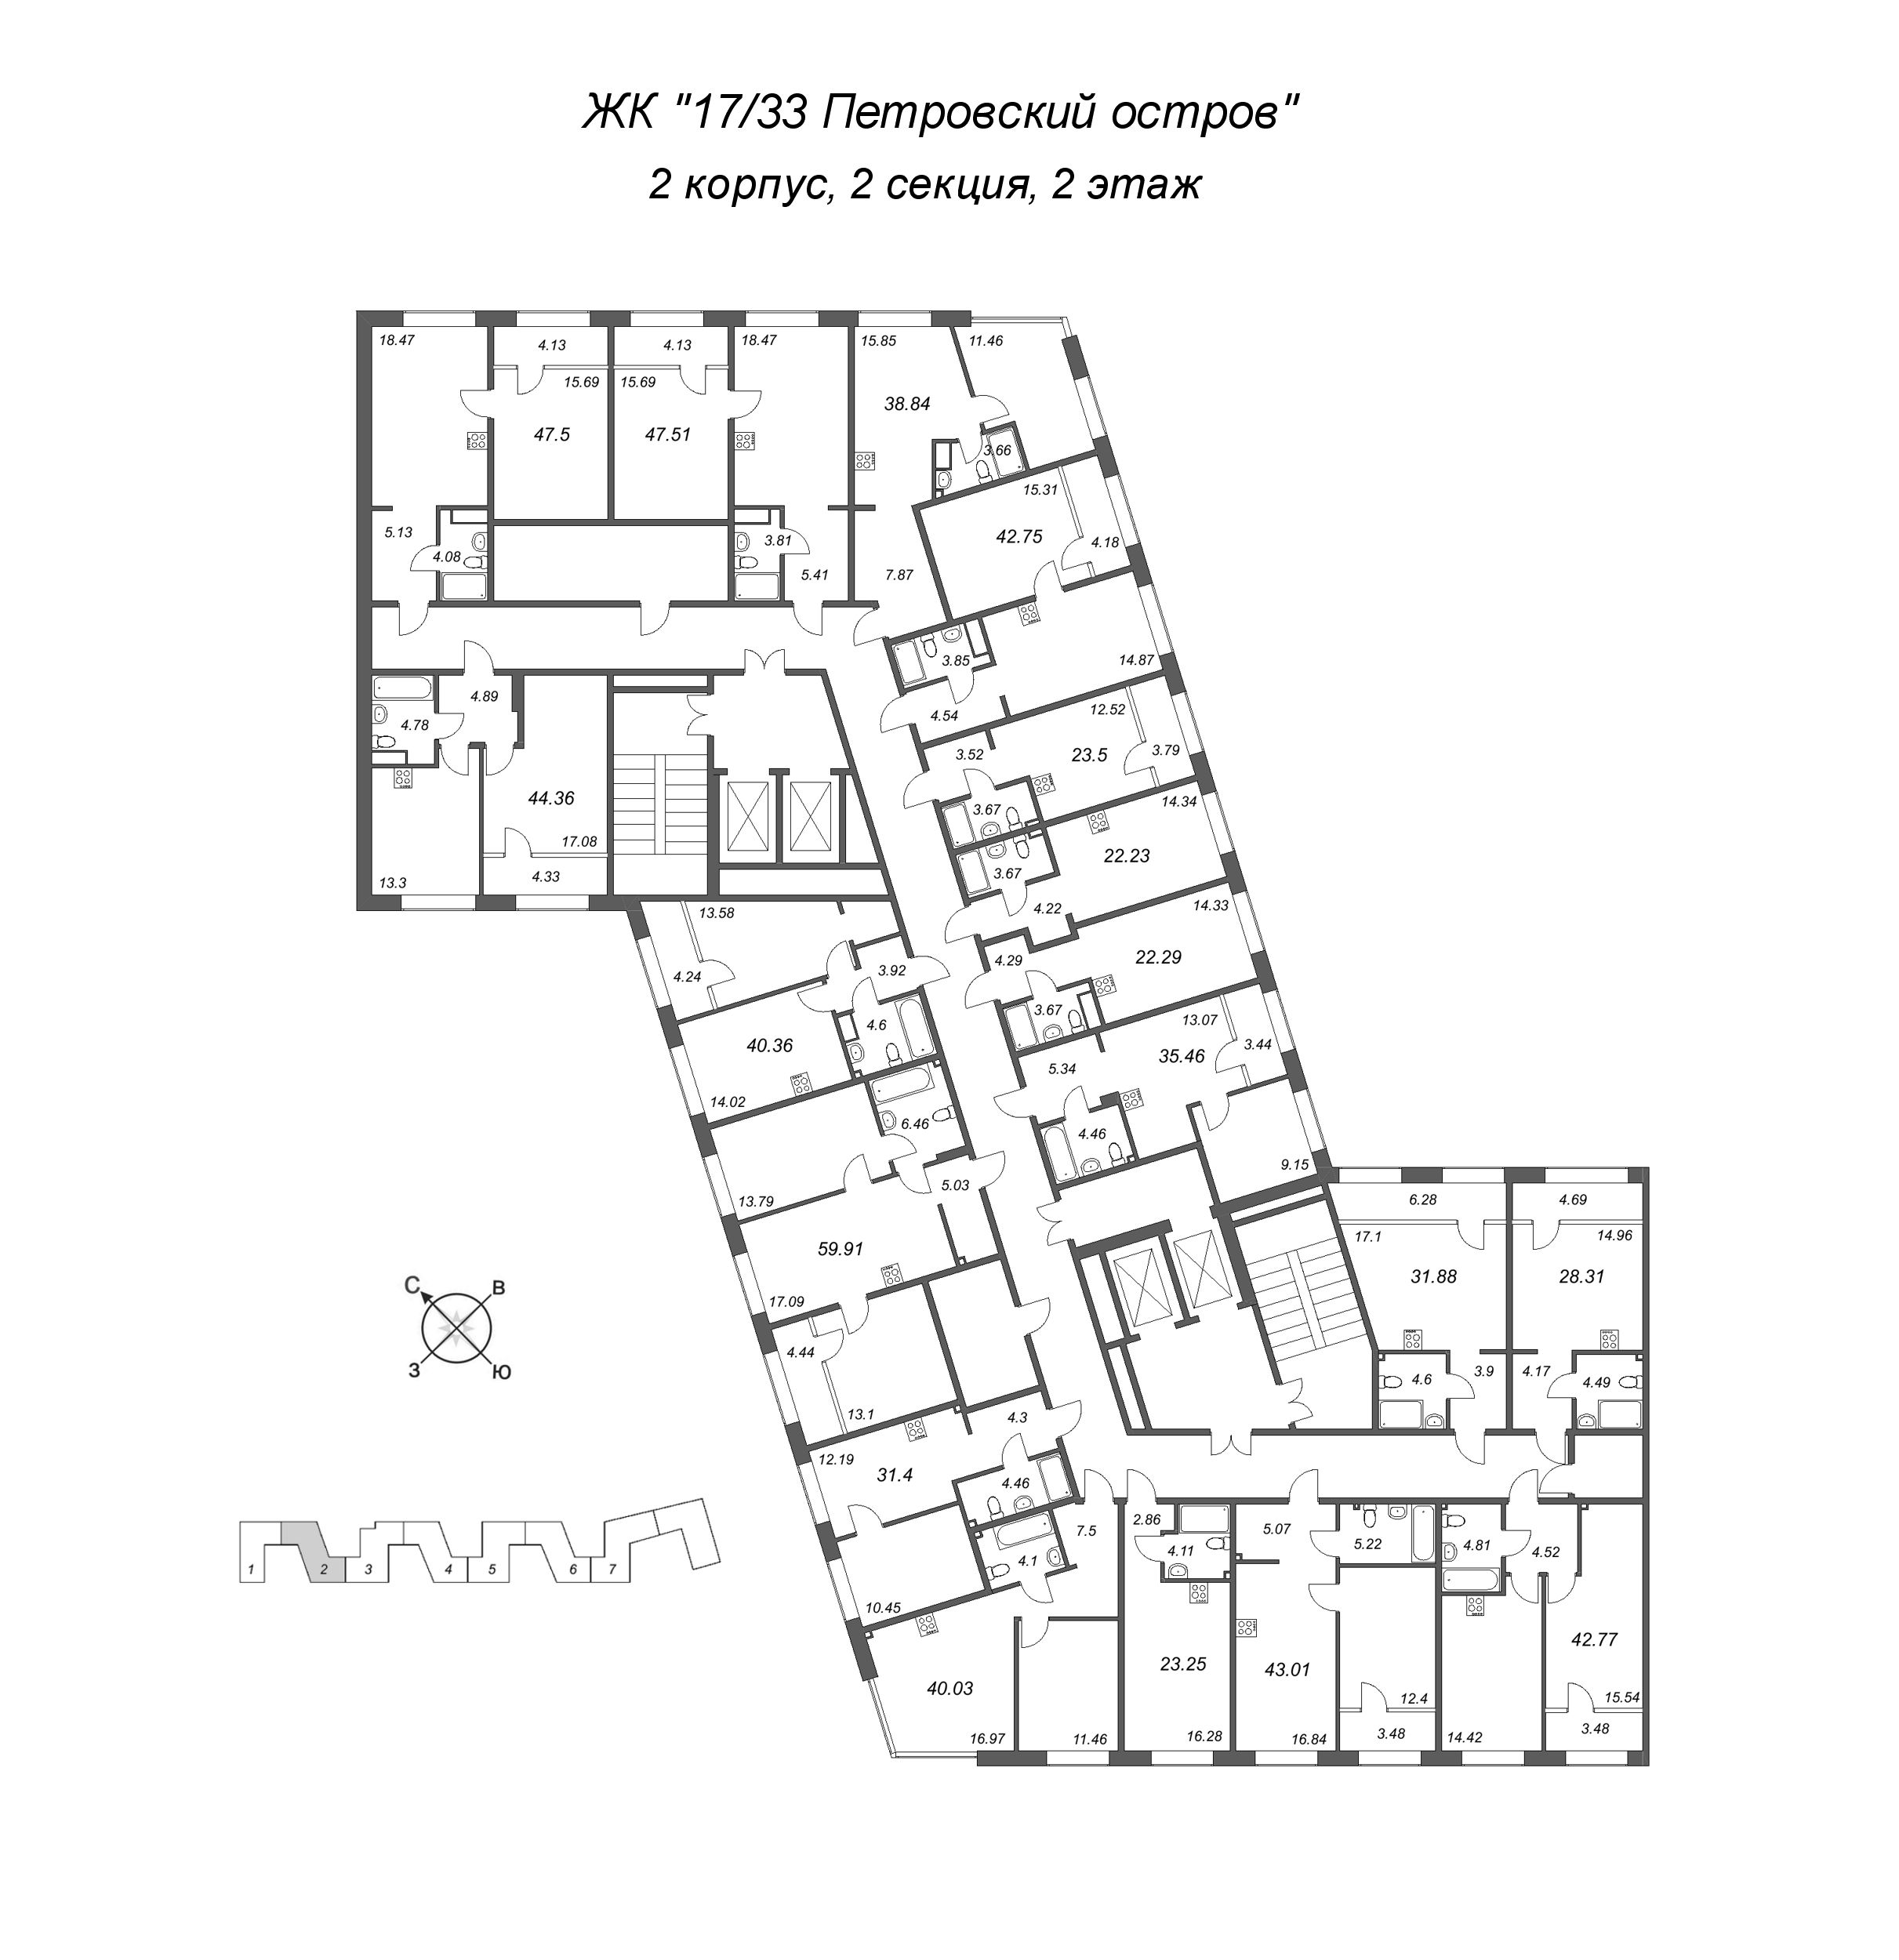 2-комнатная (Евро) квартира, 38.84 м² в ЖК "17/33 Петровский остров" - планировка этажа